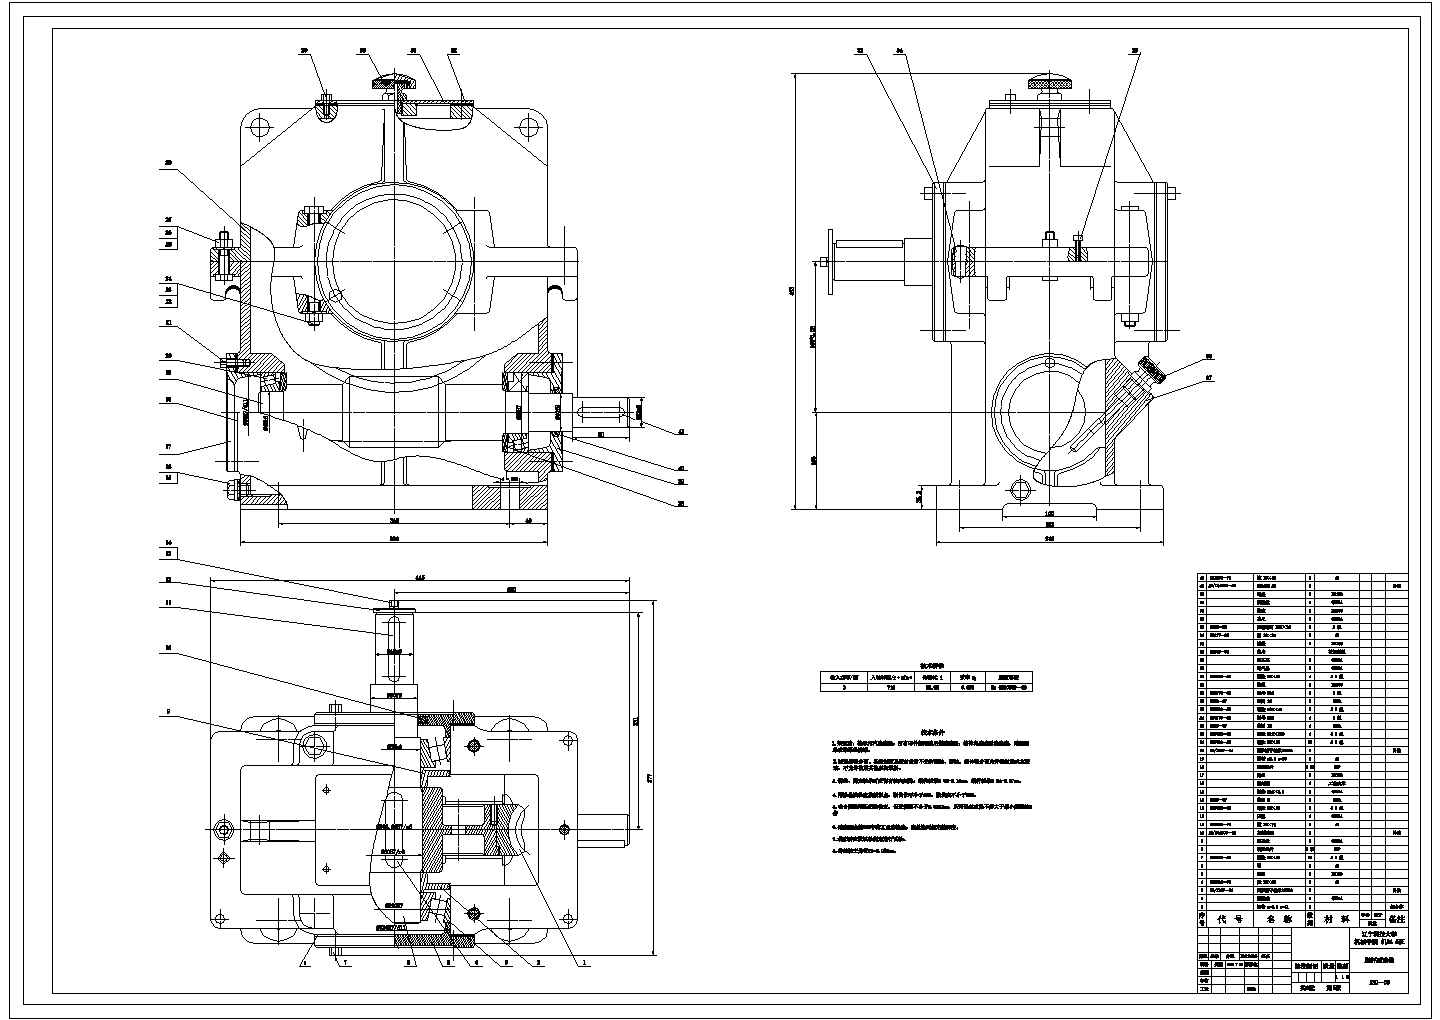 某蜗轮蜗杆减速器CAD节点设计详细图纸